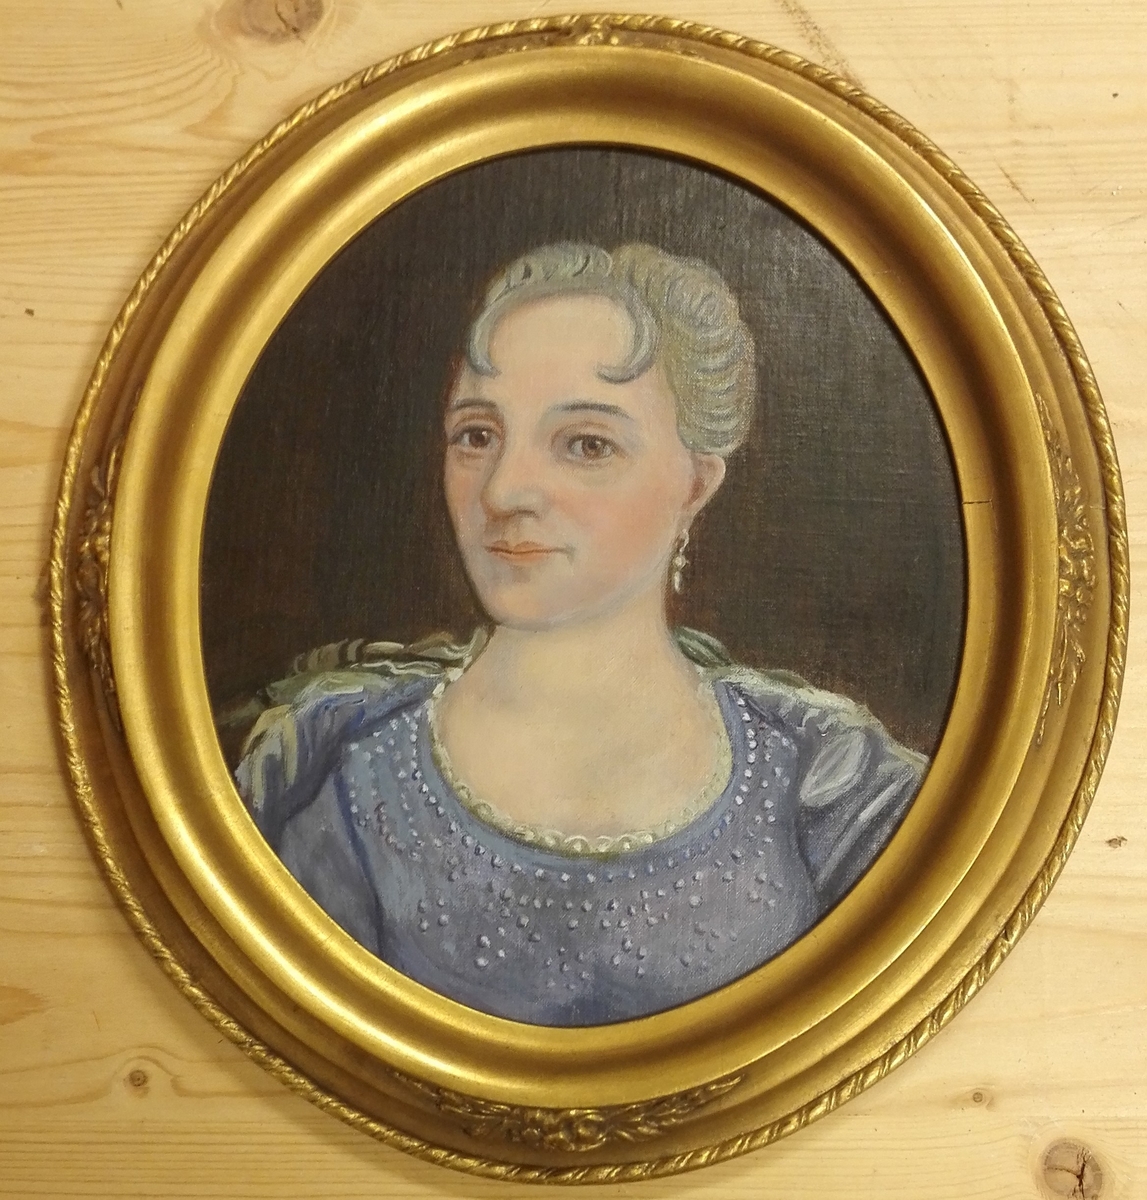 Måleriet er temmeleg sikkert kopi av eit gamalt portrett av Birgitte Ludvigsdatter Munthe (1686 - 1779), kona til presten Anders Daae 

Det har oval gullforgylt ramme.